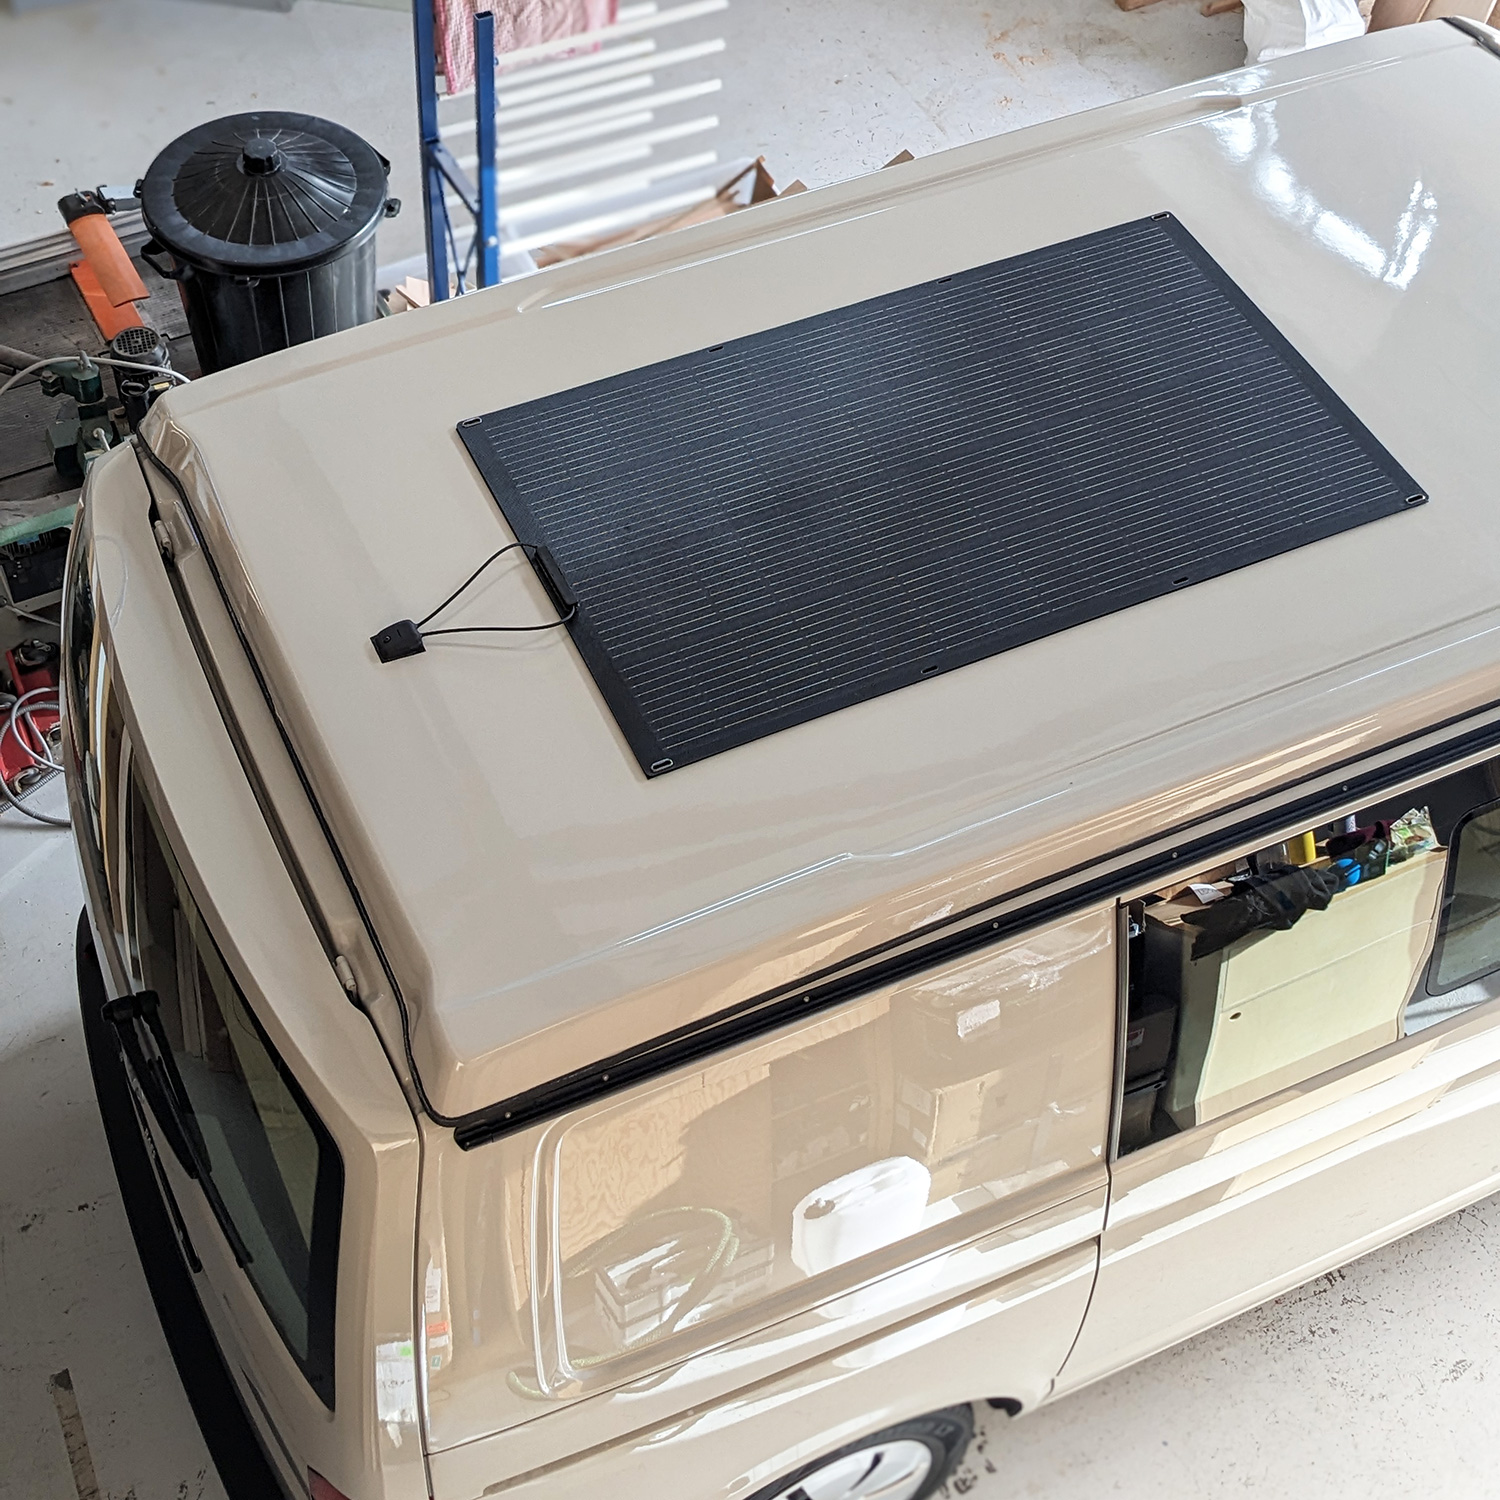 panneau solaire souple sur un transporter t6 aménagé